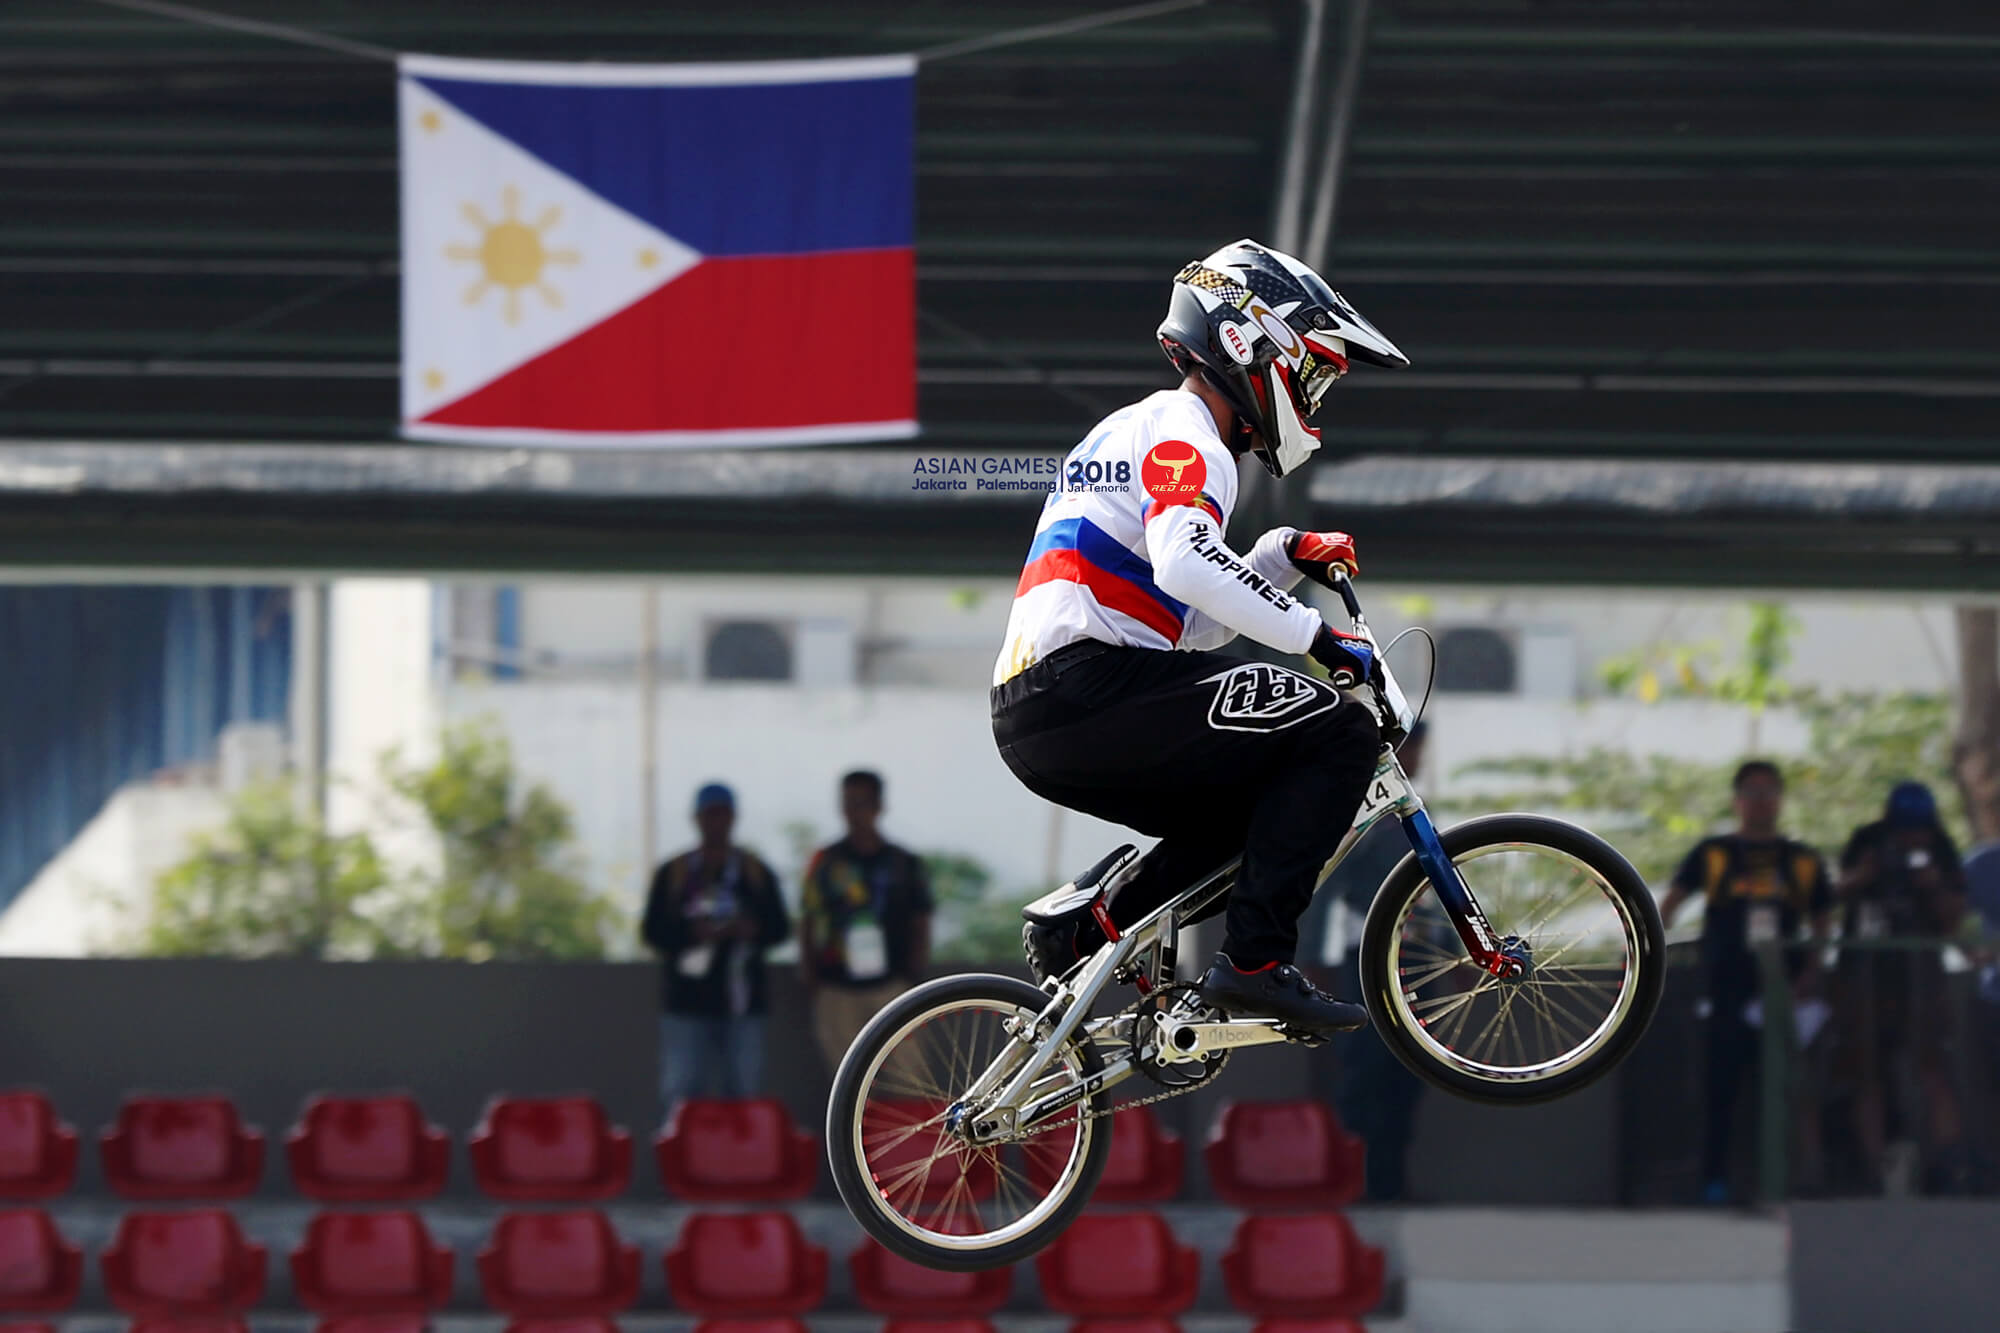 Asian Games 2018 Cycling – Daniel Caluag